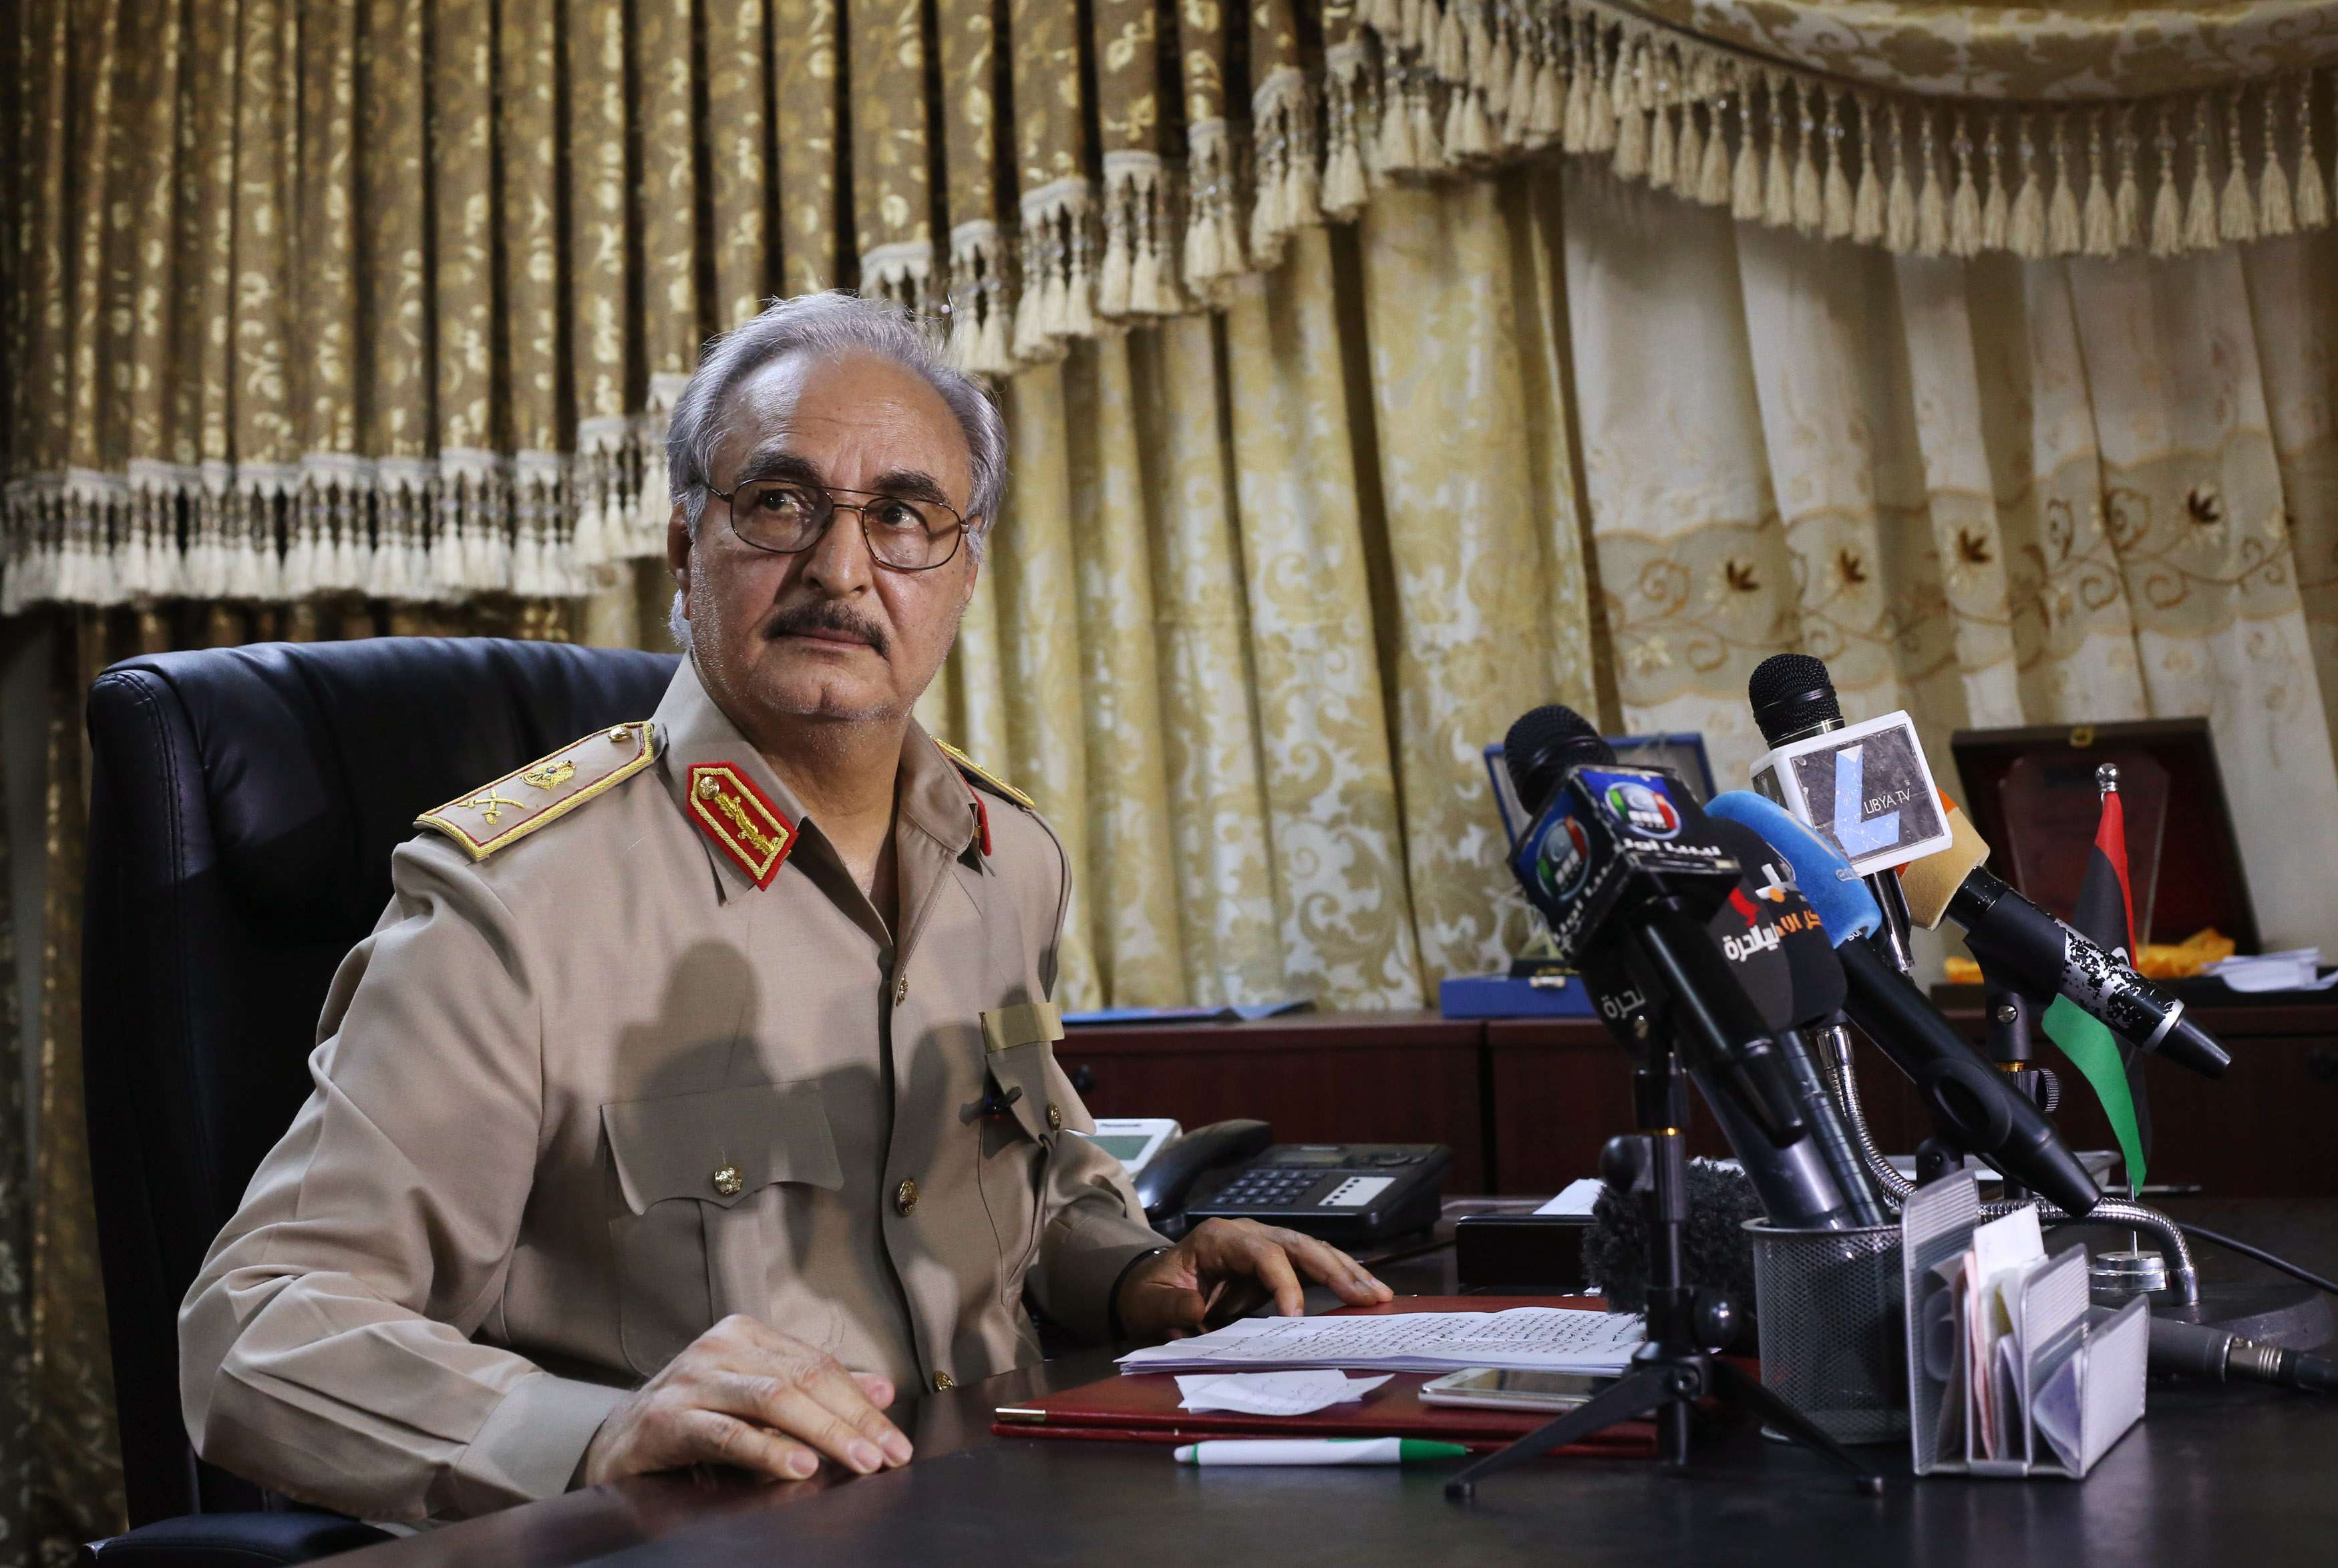 Λιβύη: Ποιος είναι ο στρατάρχης Χάφταρ που ξεκίνησε τον πόλεμο αναζητώντας την εξουσία